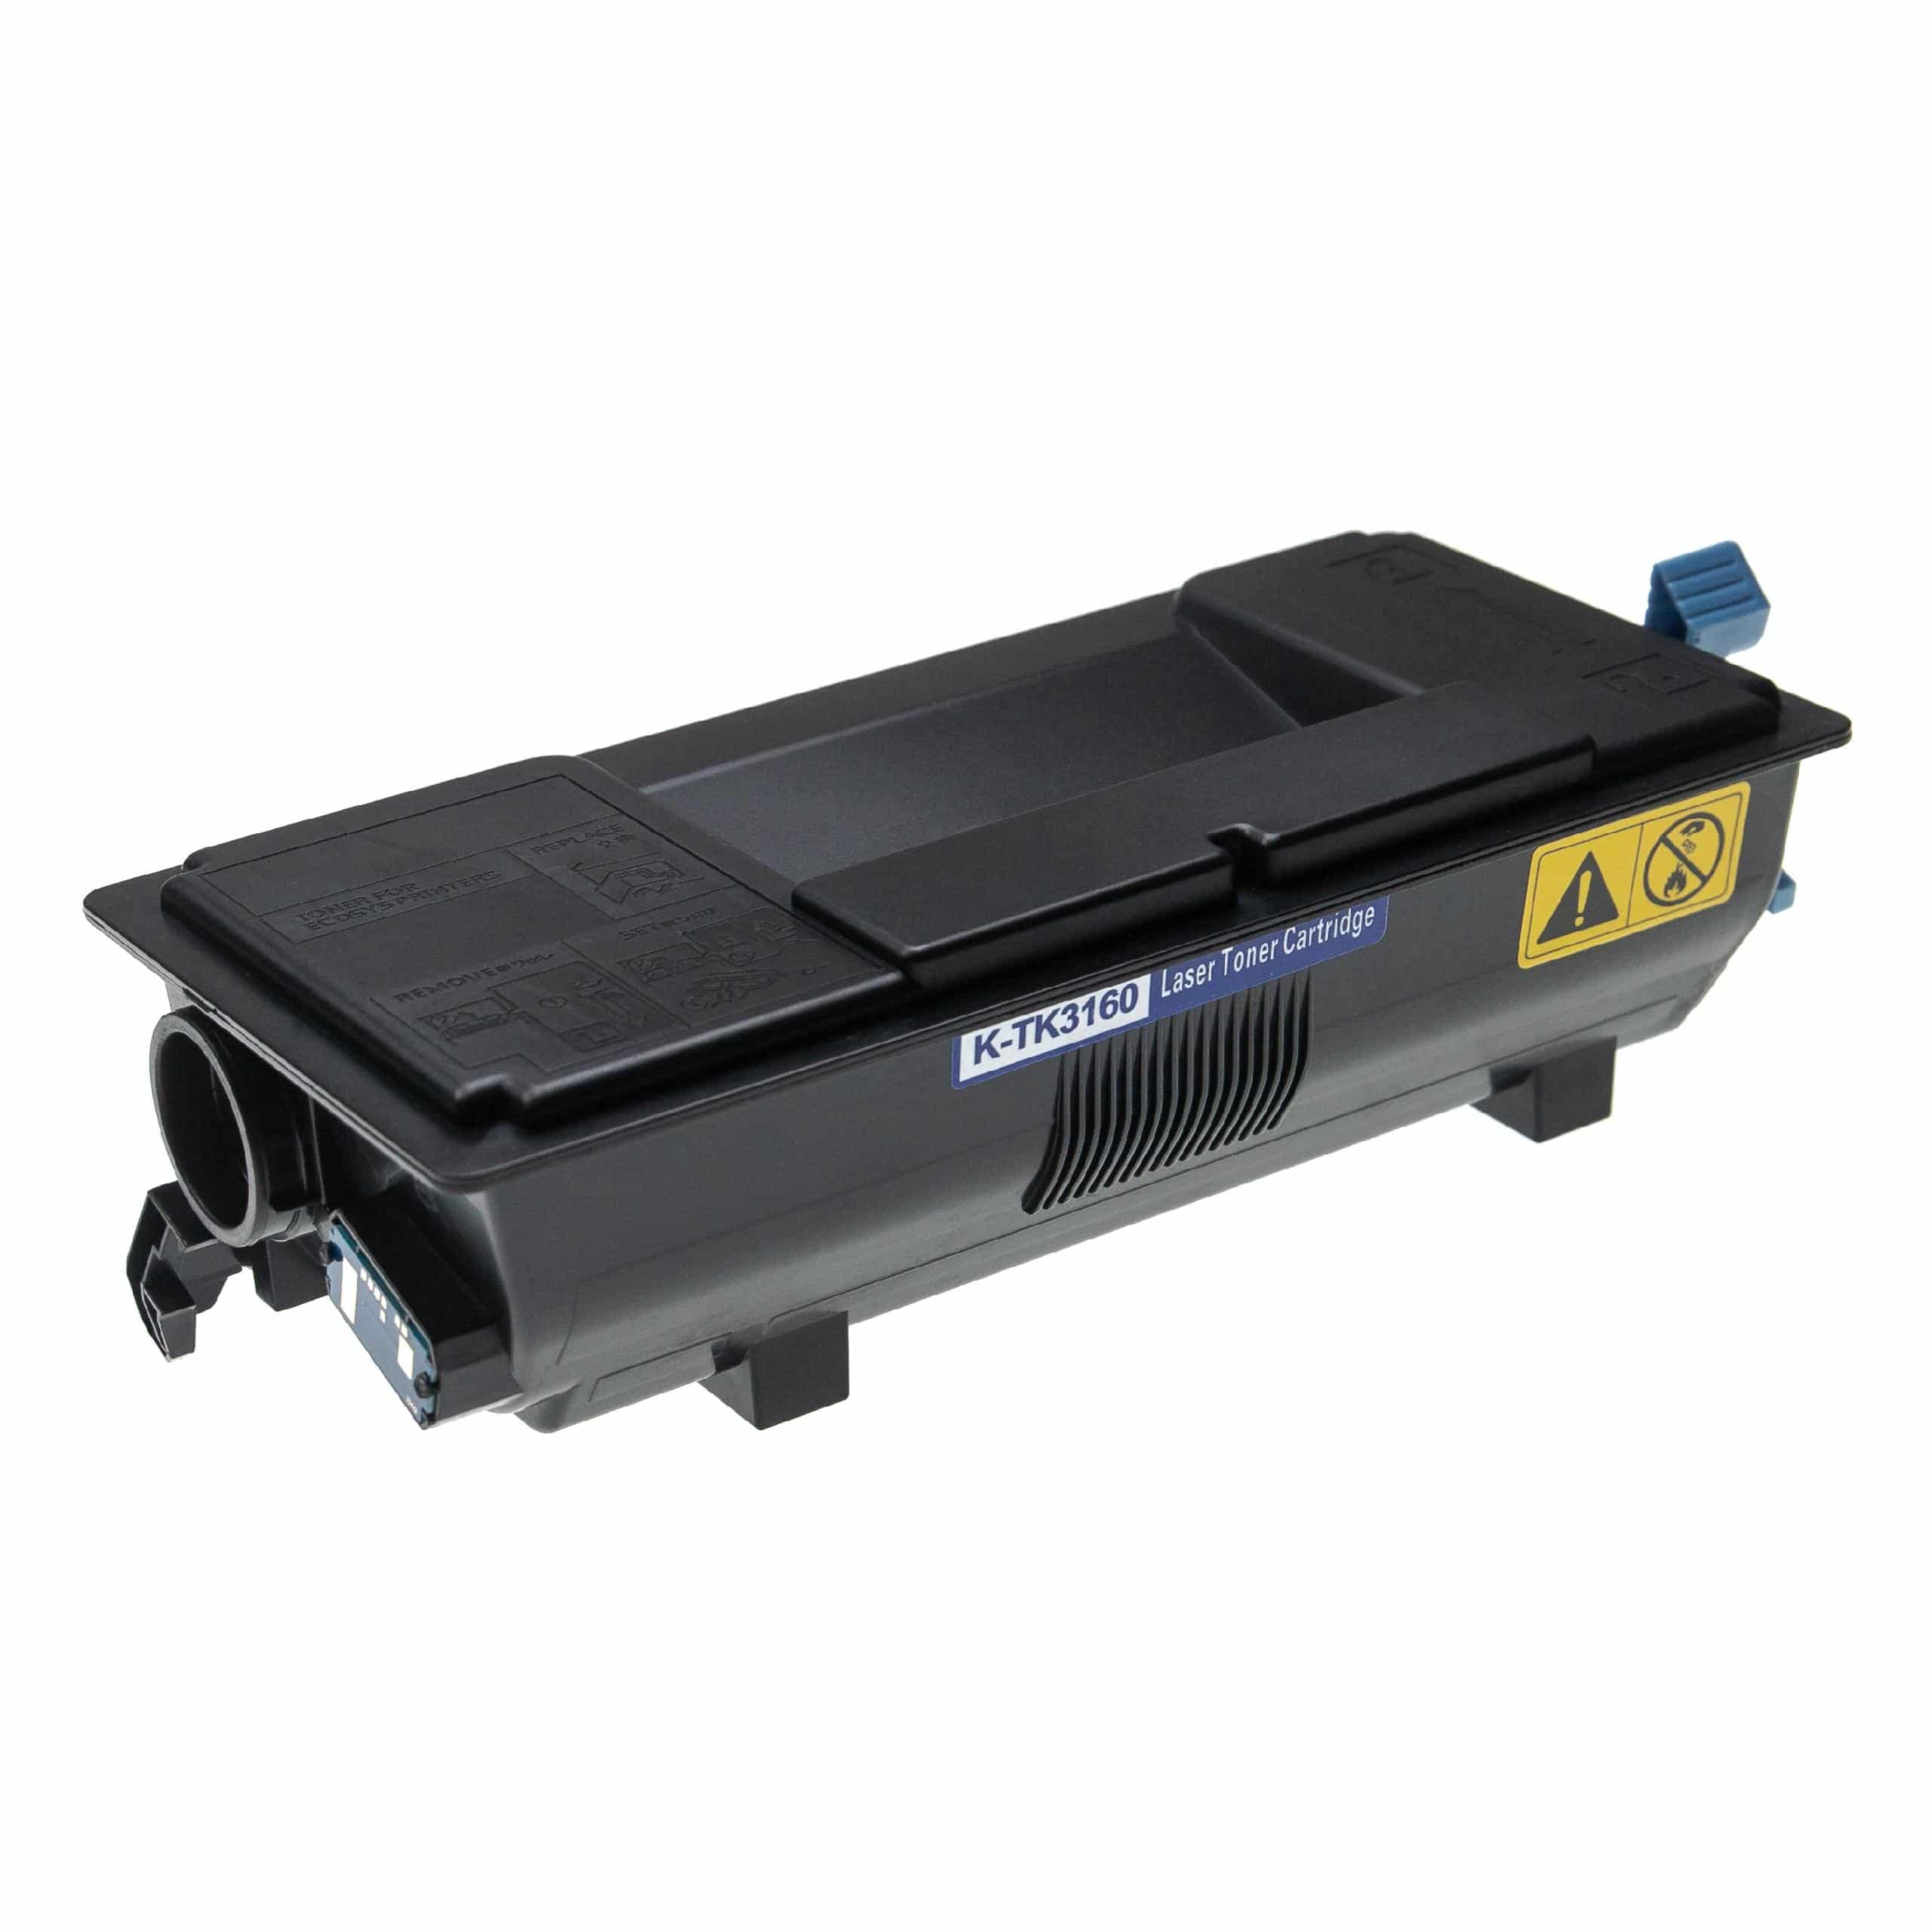 Cartouche de toner remplace Kyocera TK-3160 pour imprimante laser Kyocera + récupérateur, noir